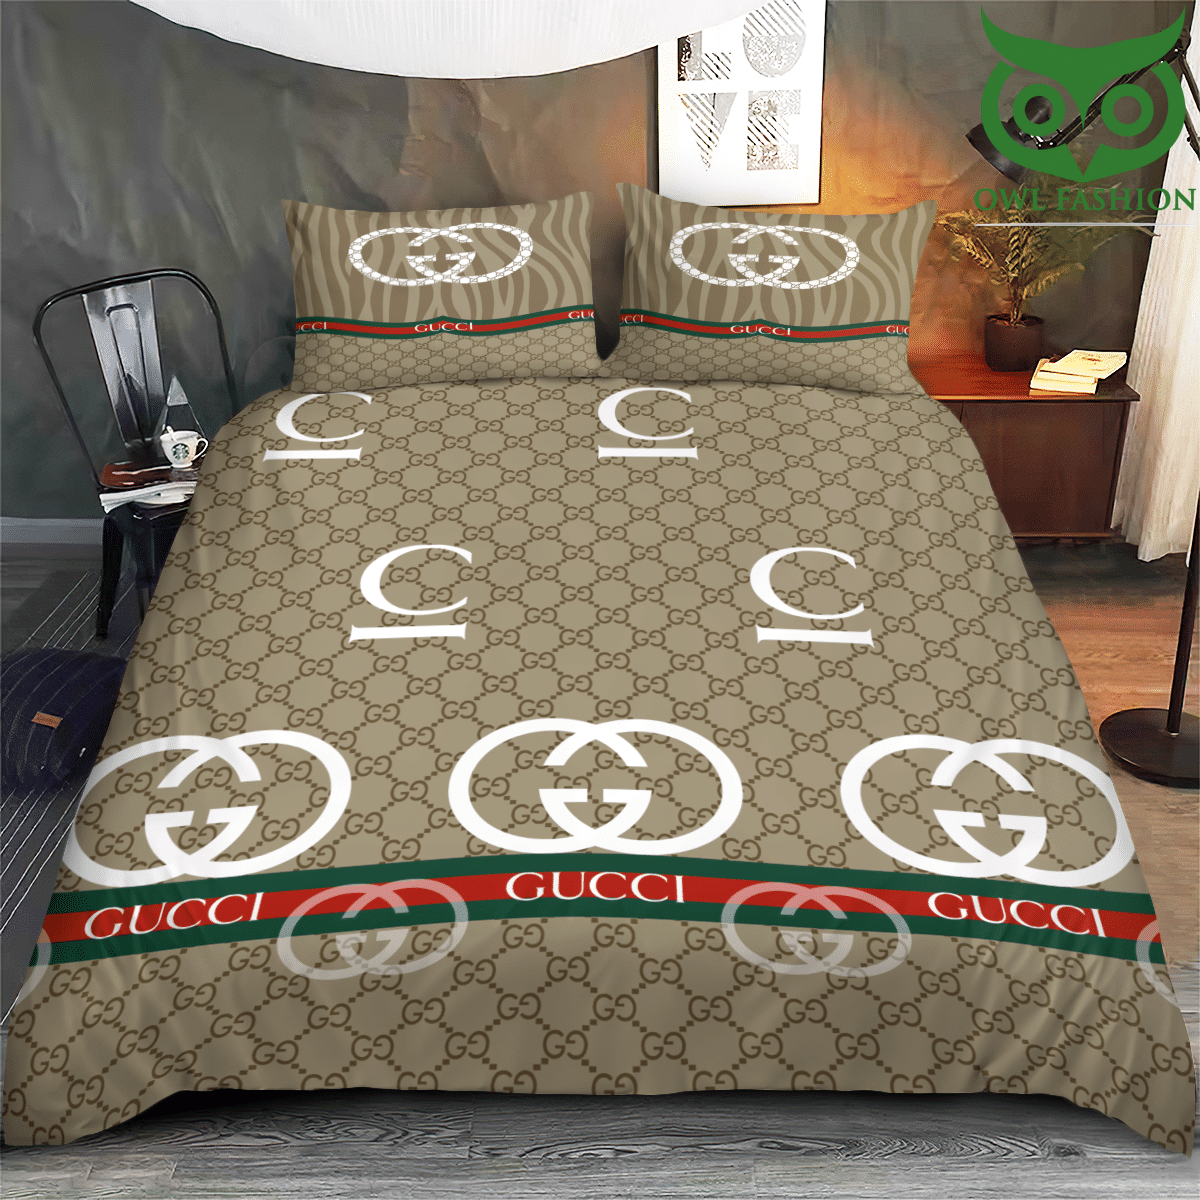 LUXURY Gucci basic tone bedding set